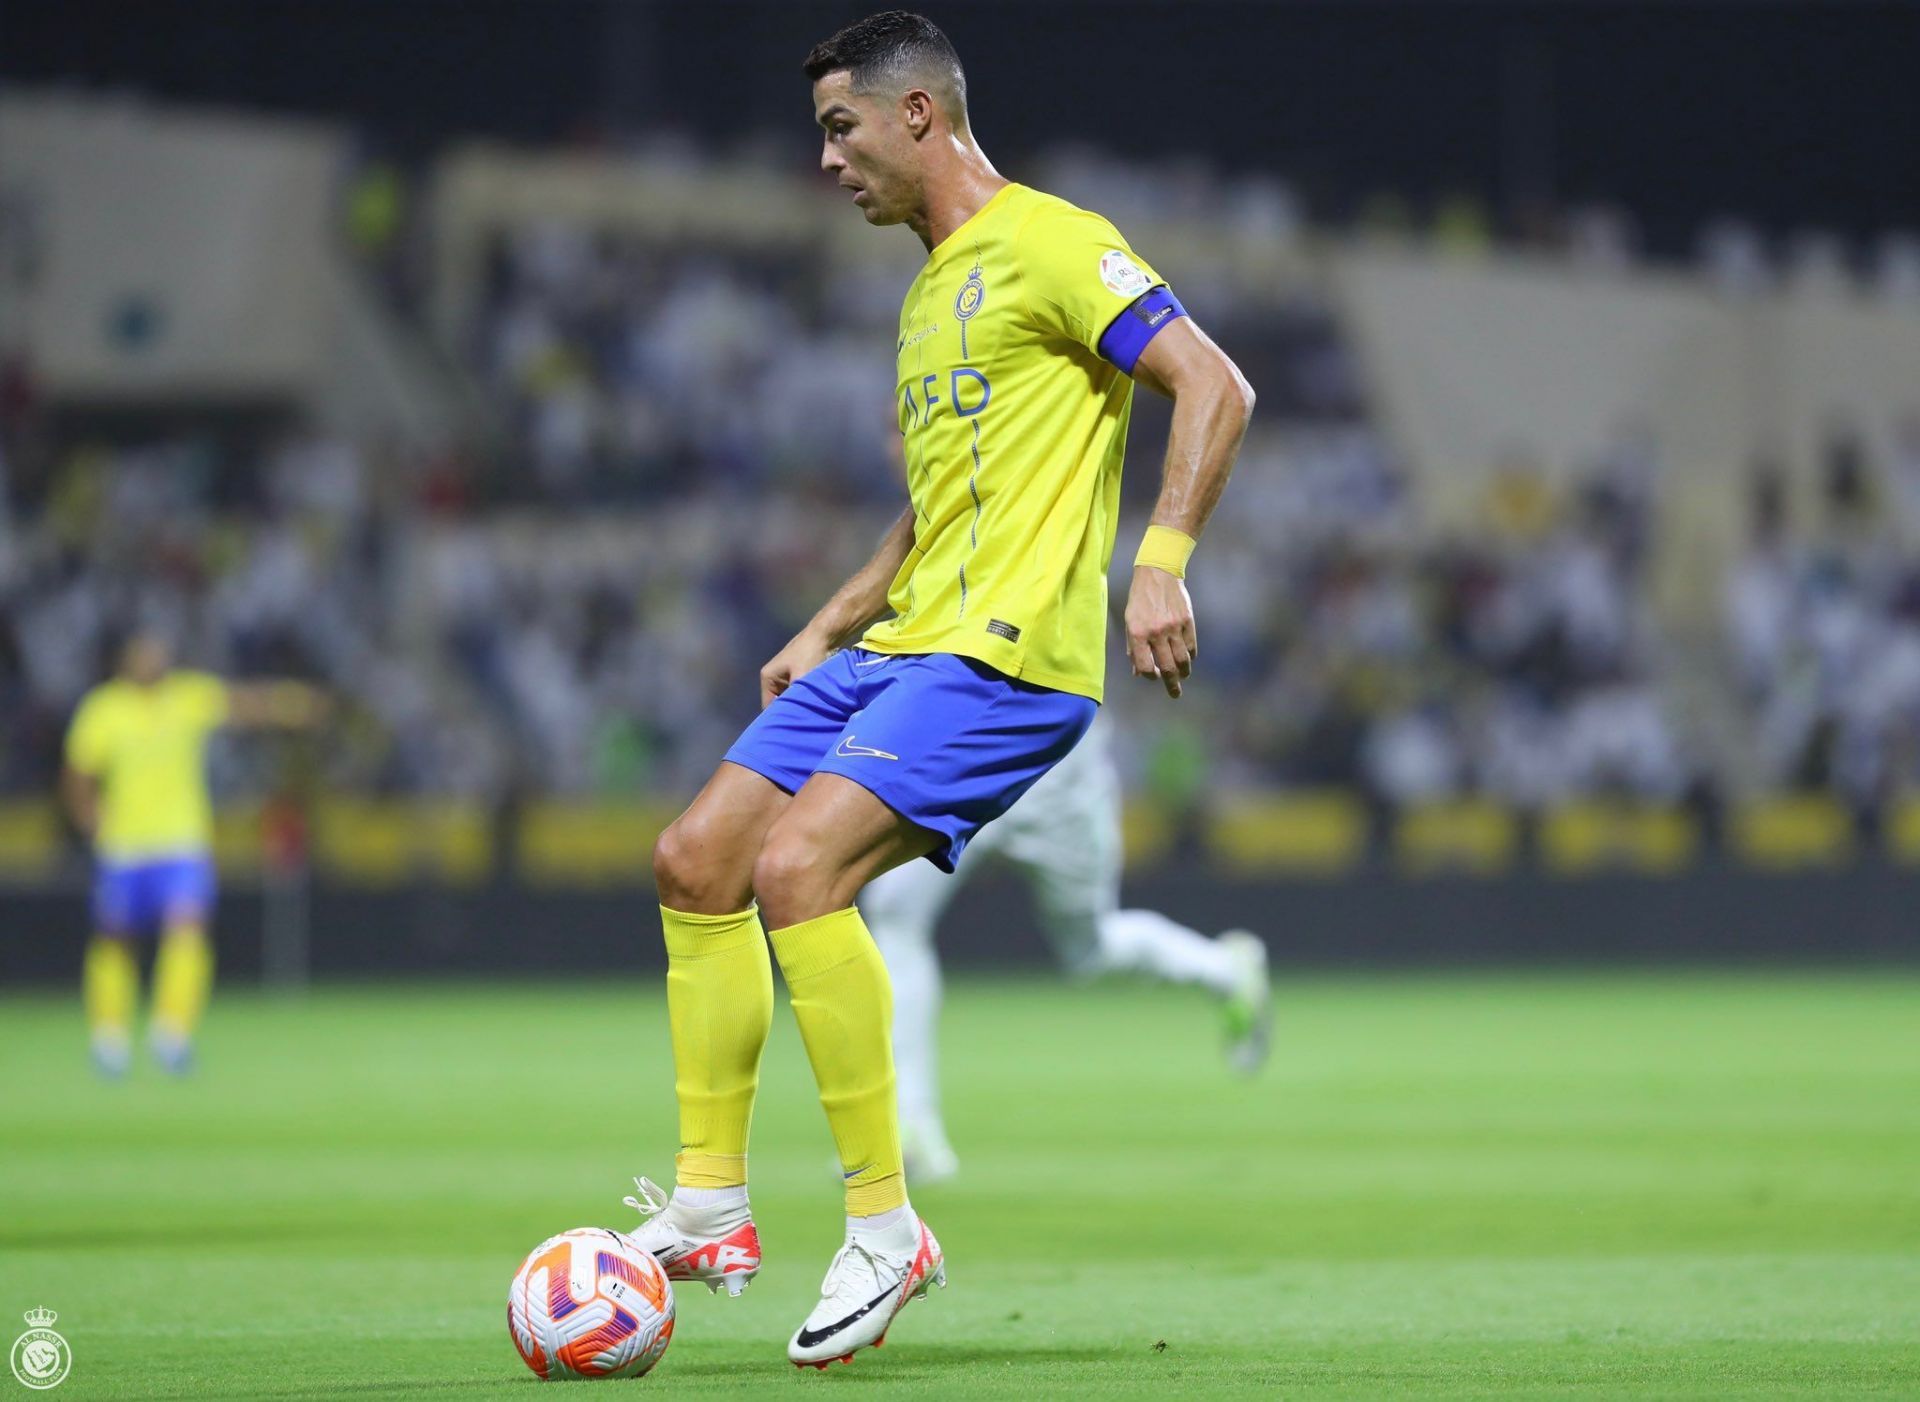 Cristiano Ronaldo in action for Al-Nassr against Al-Fateh